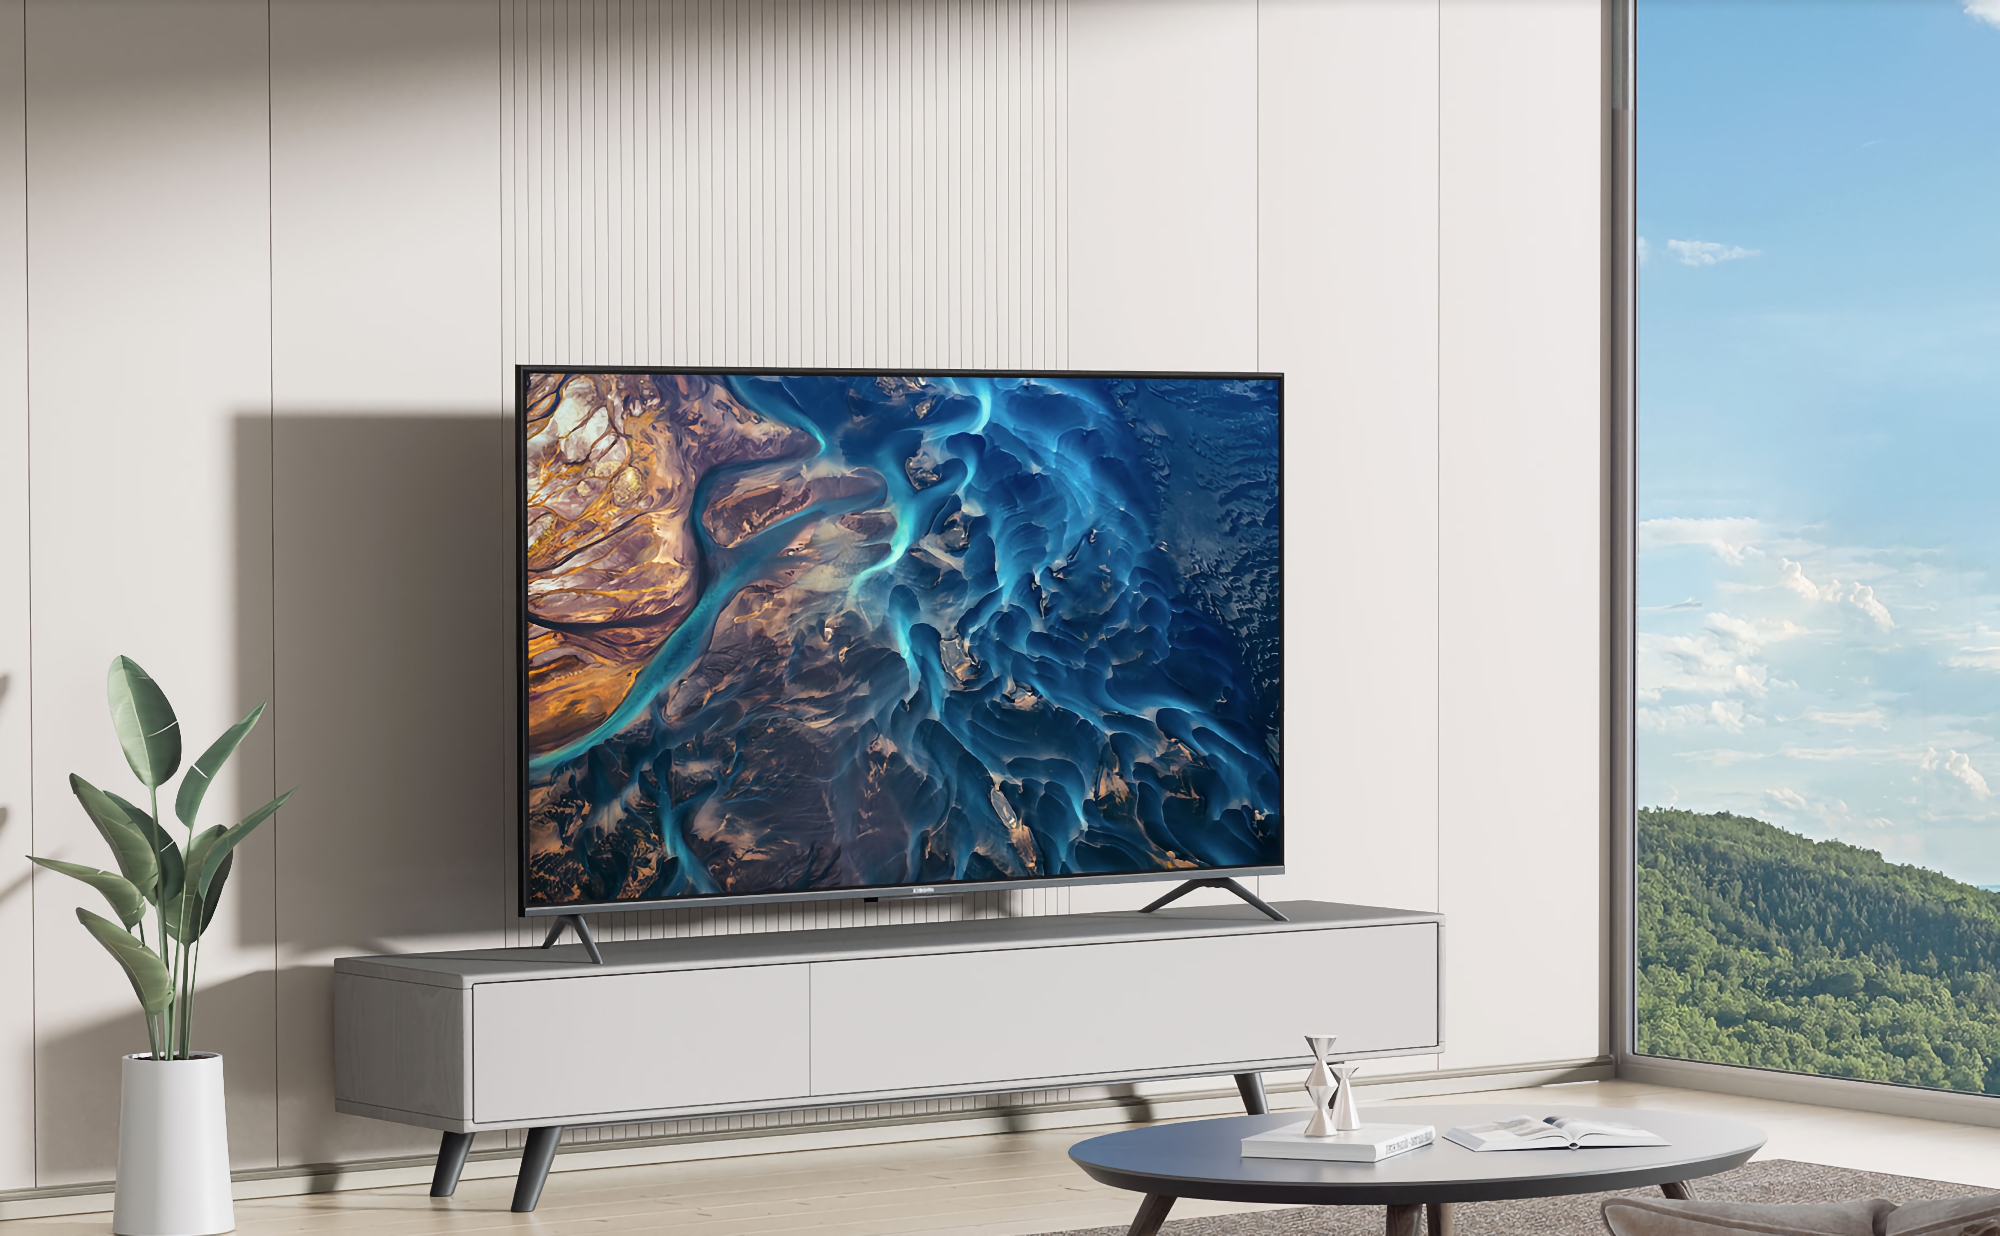 Xiaomi TV ES50 2022: TV 4K da 50 pollici con chip MediaTek e supporto Dolby Vision